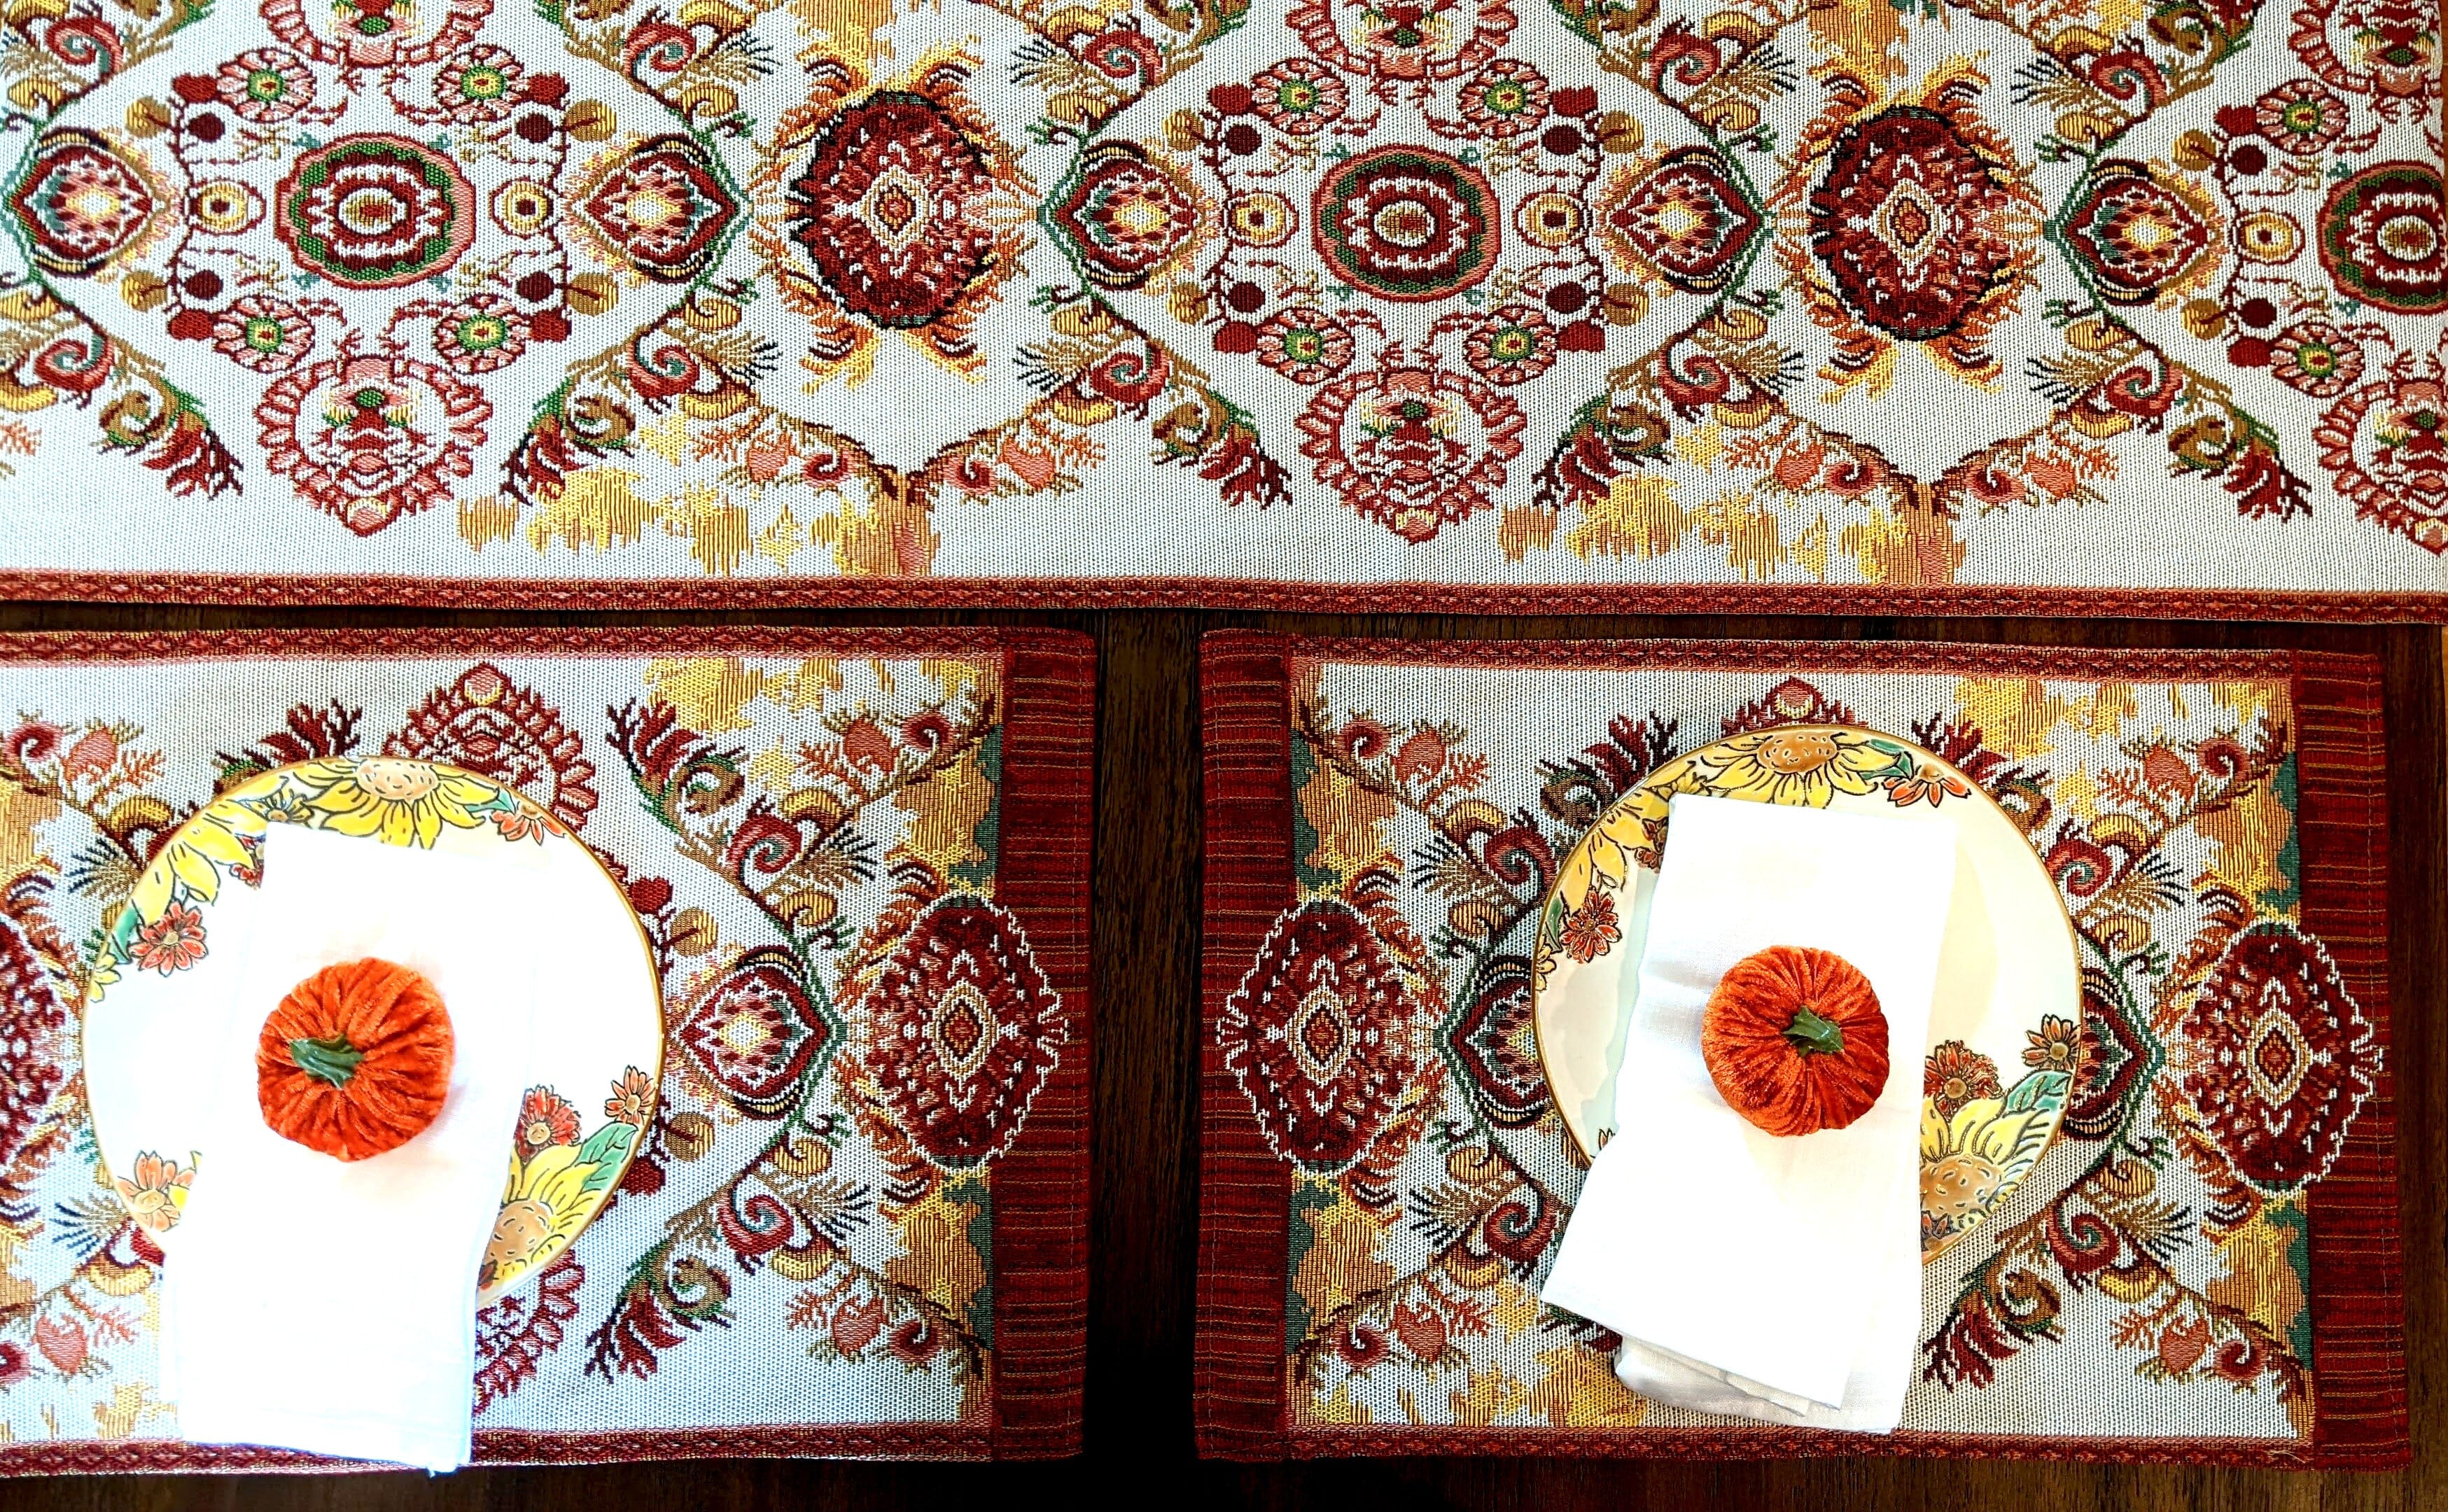 Tache Colorful Boho Elegant Burgundy Red Orange Ornate Paisley Woven Tapestry Table Runner